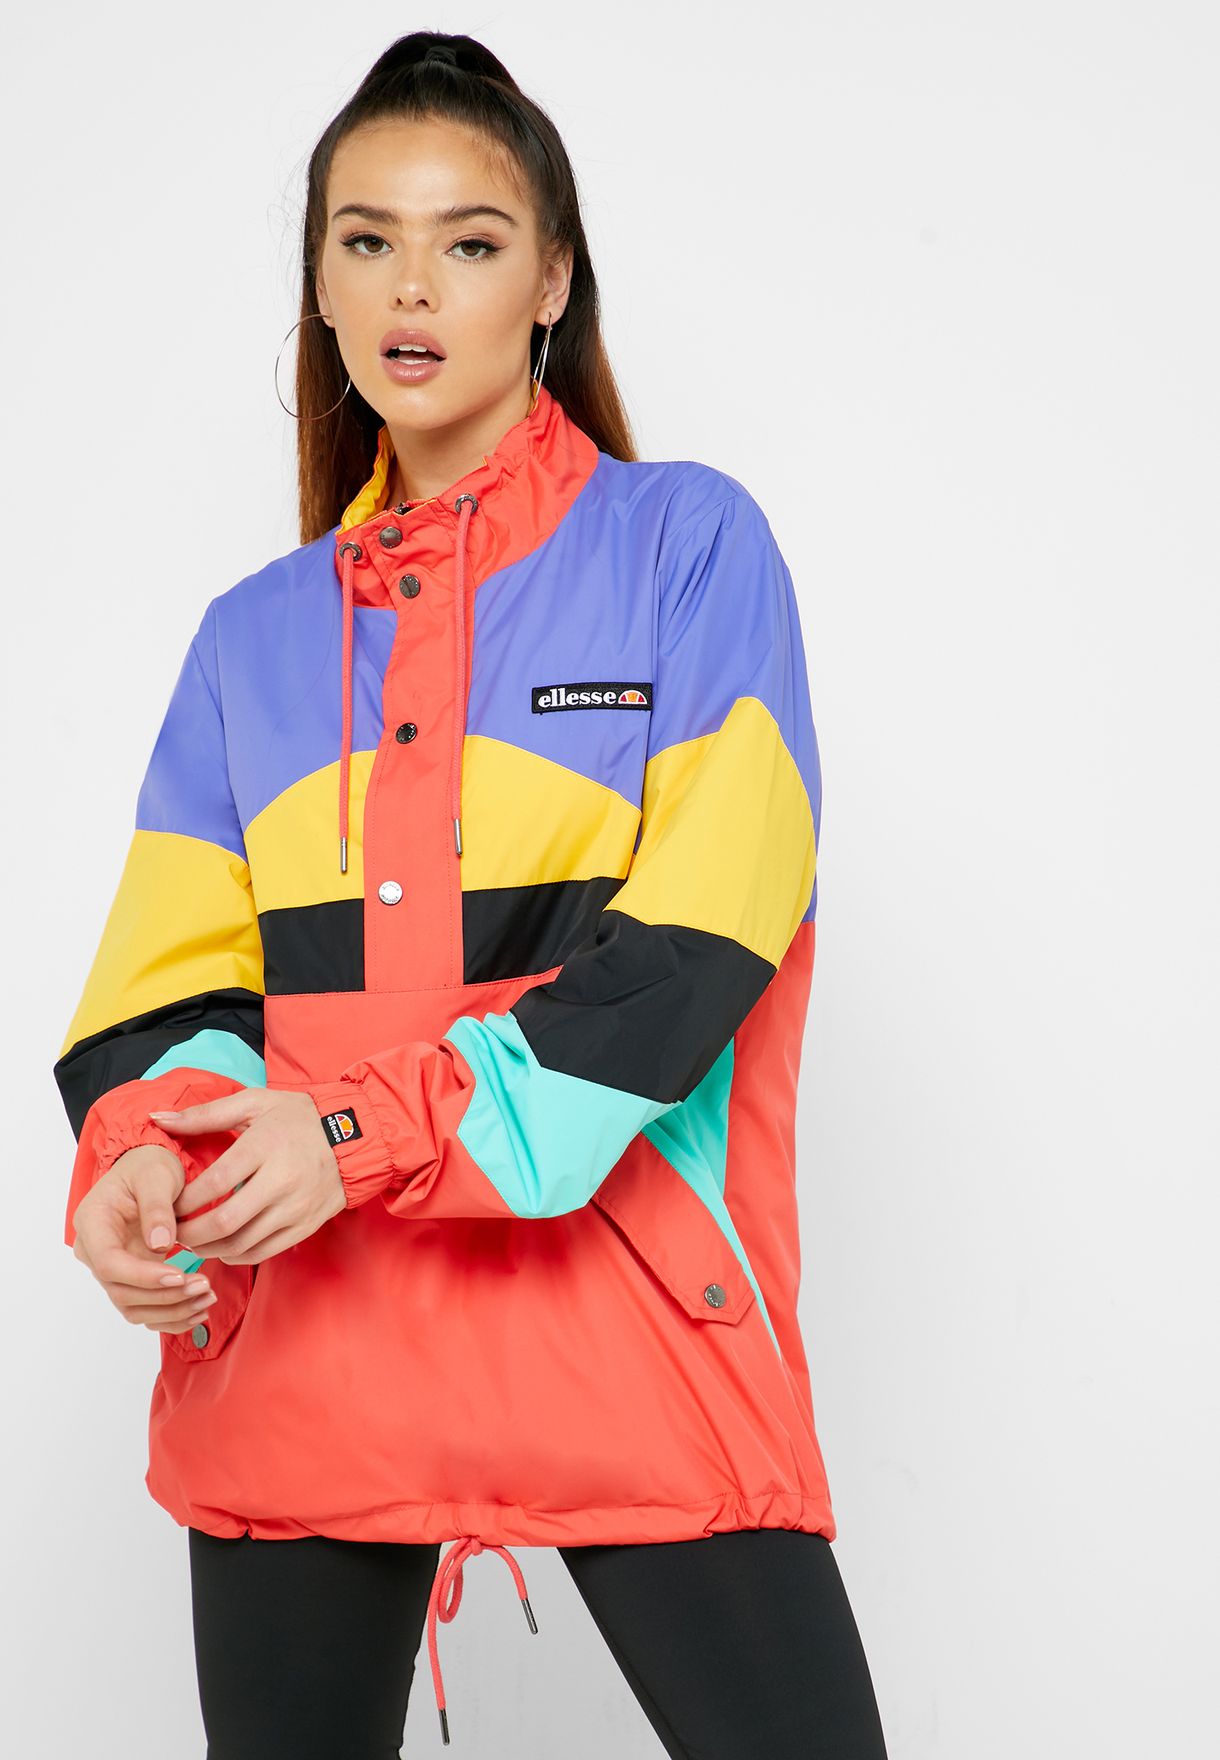 ellesse multi coloured jacket